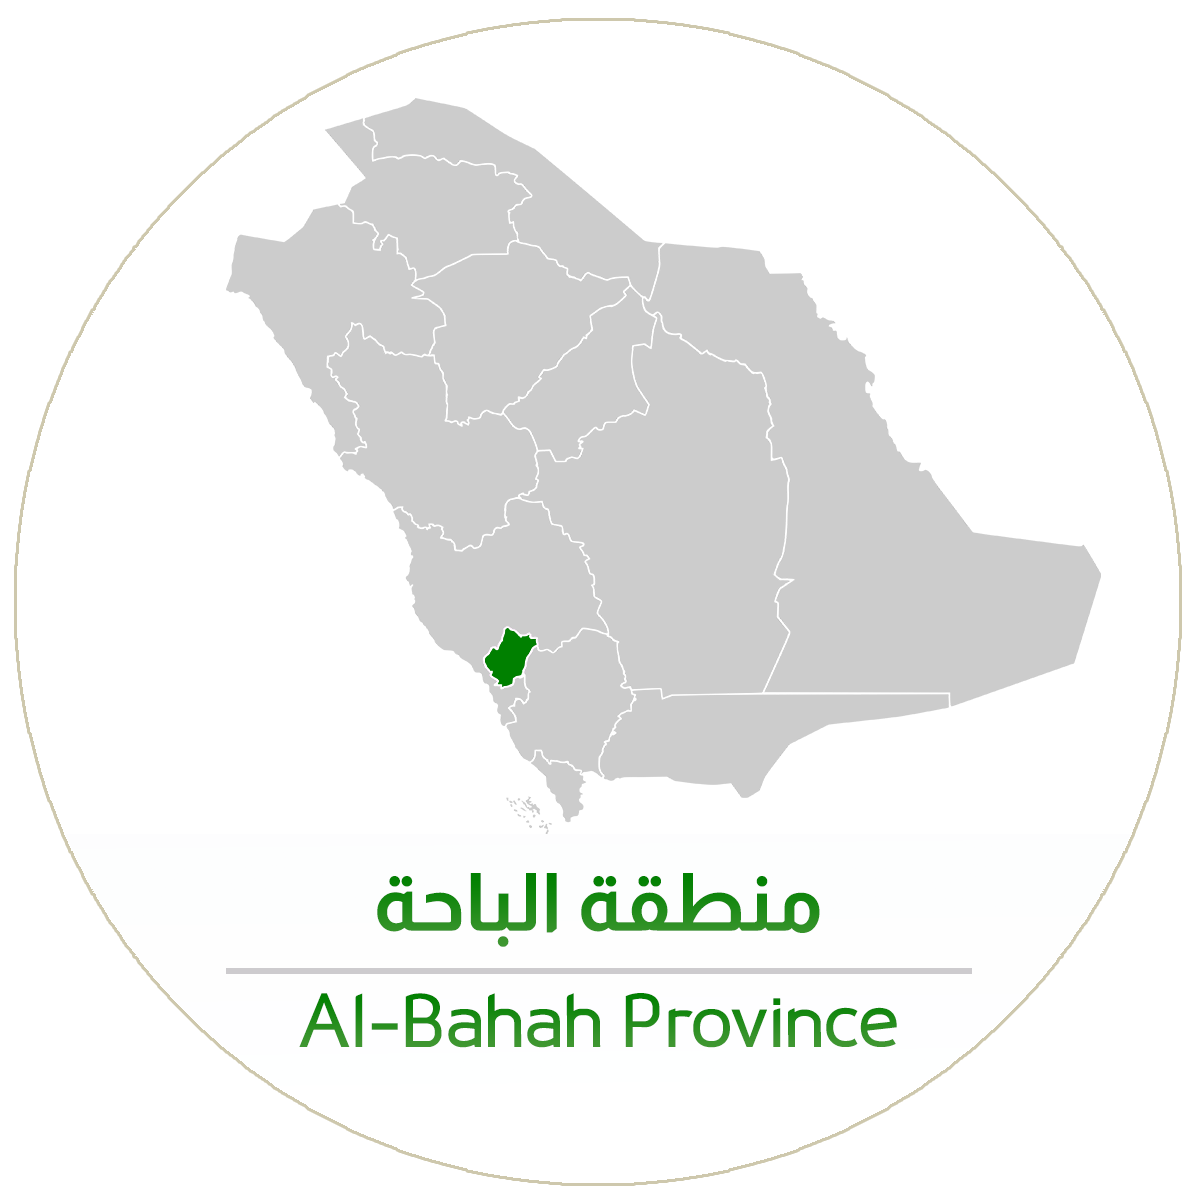 Al-Baha